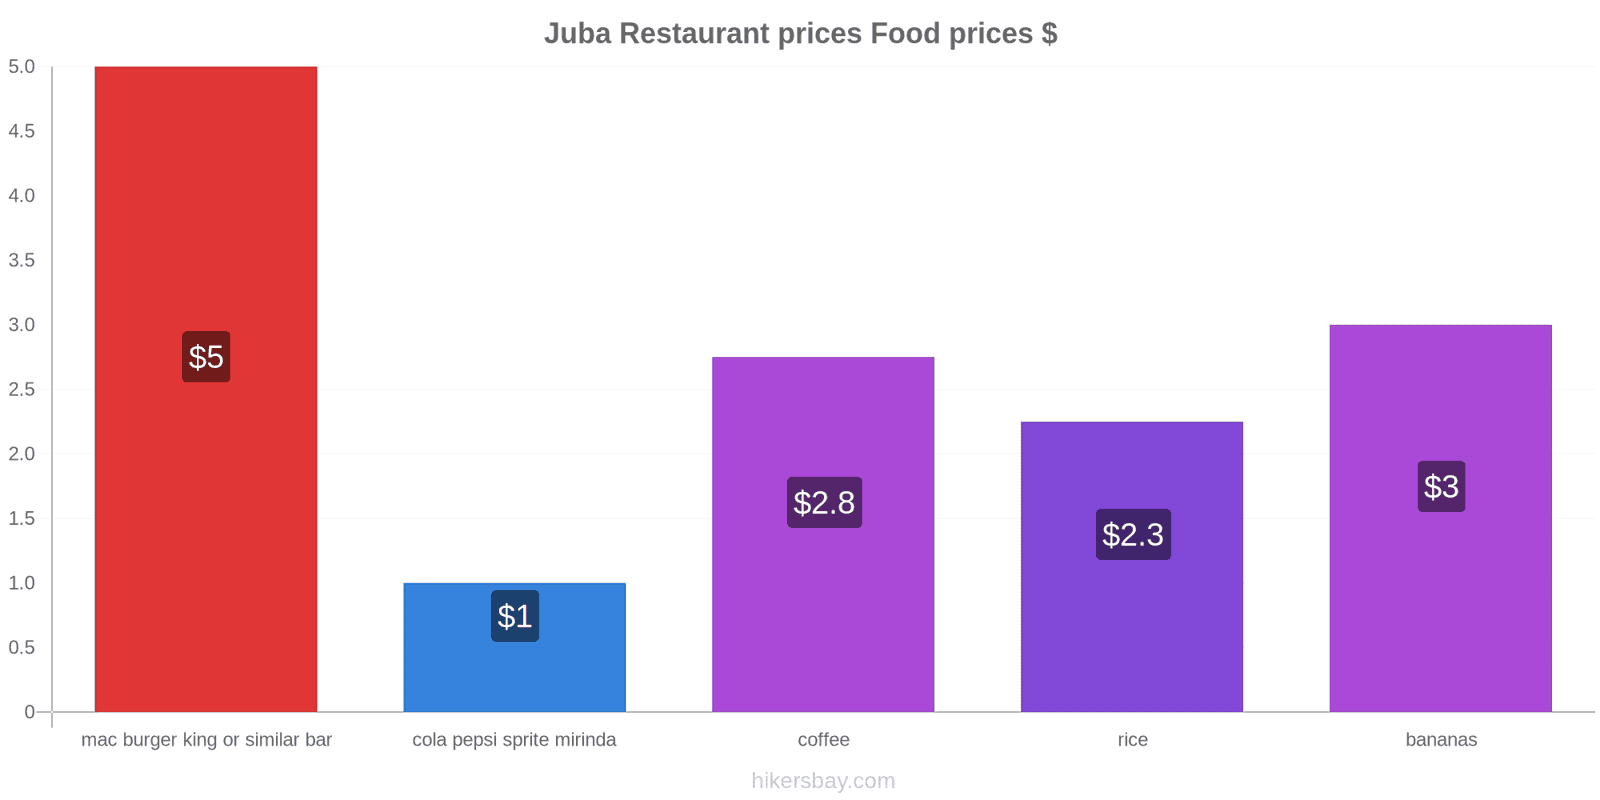 Juba price changes hikersbay.com